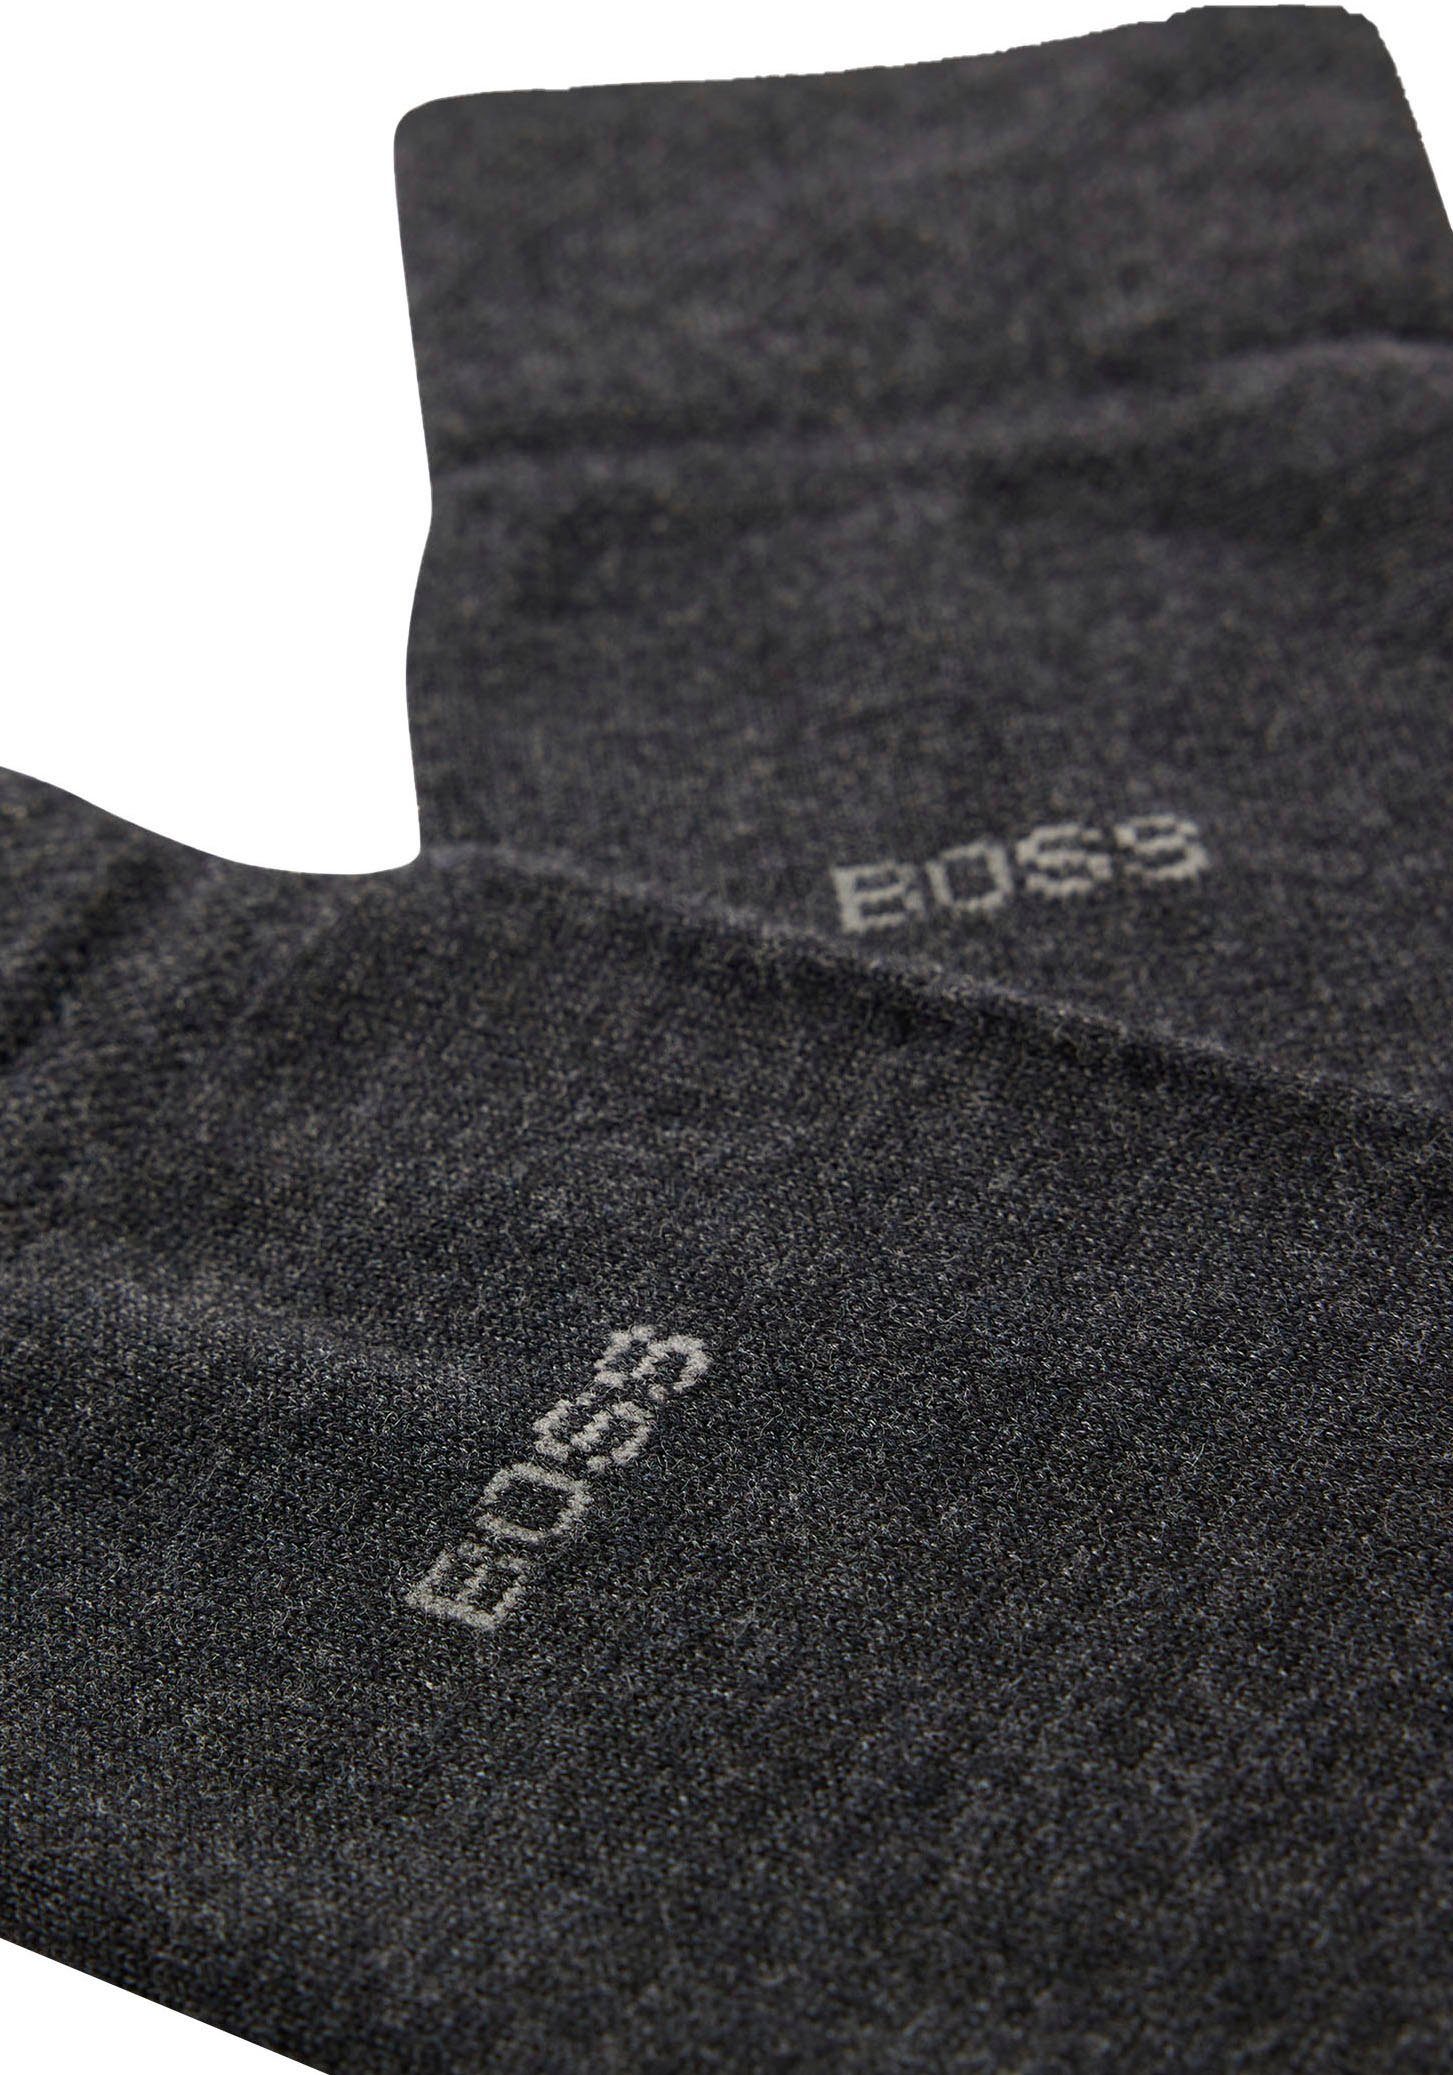 BOSS mit Black012 (Packung) VI Edward dezentem Logo-Schriftzug Gentle BOSS Businesssocken RS